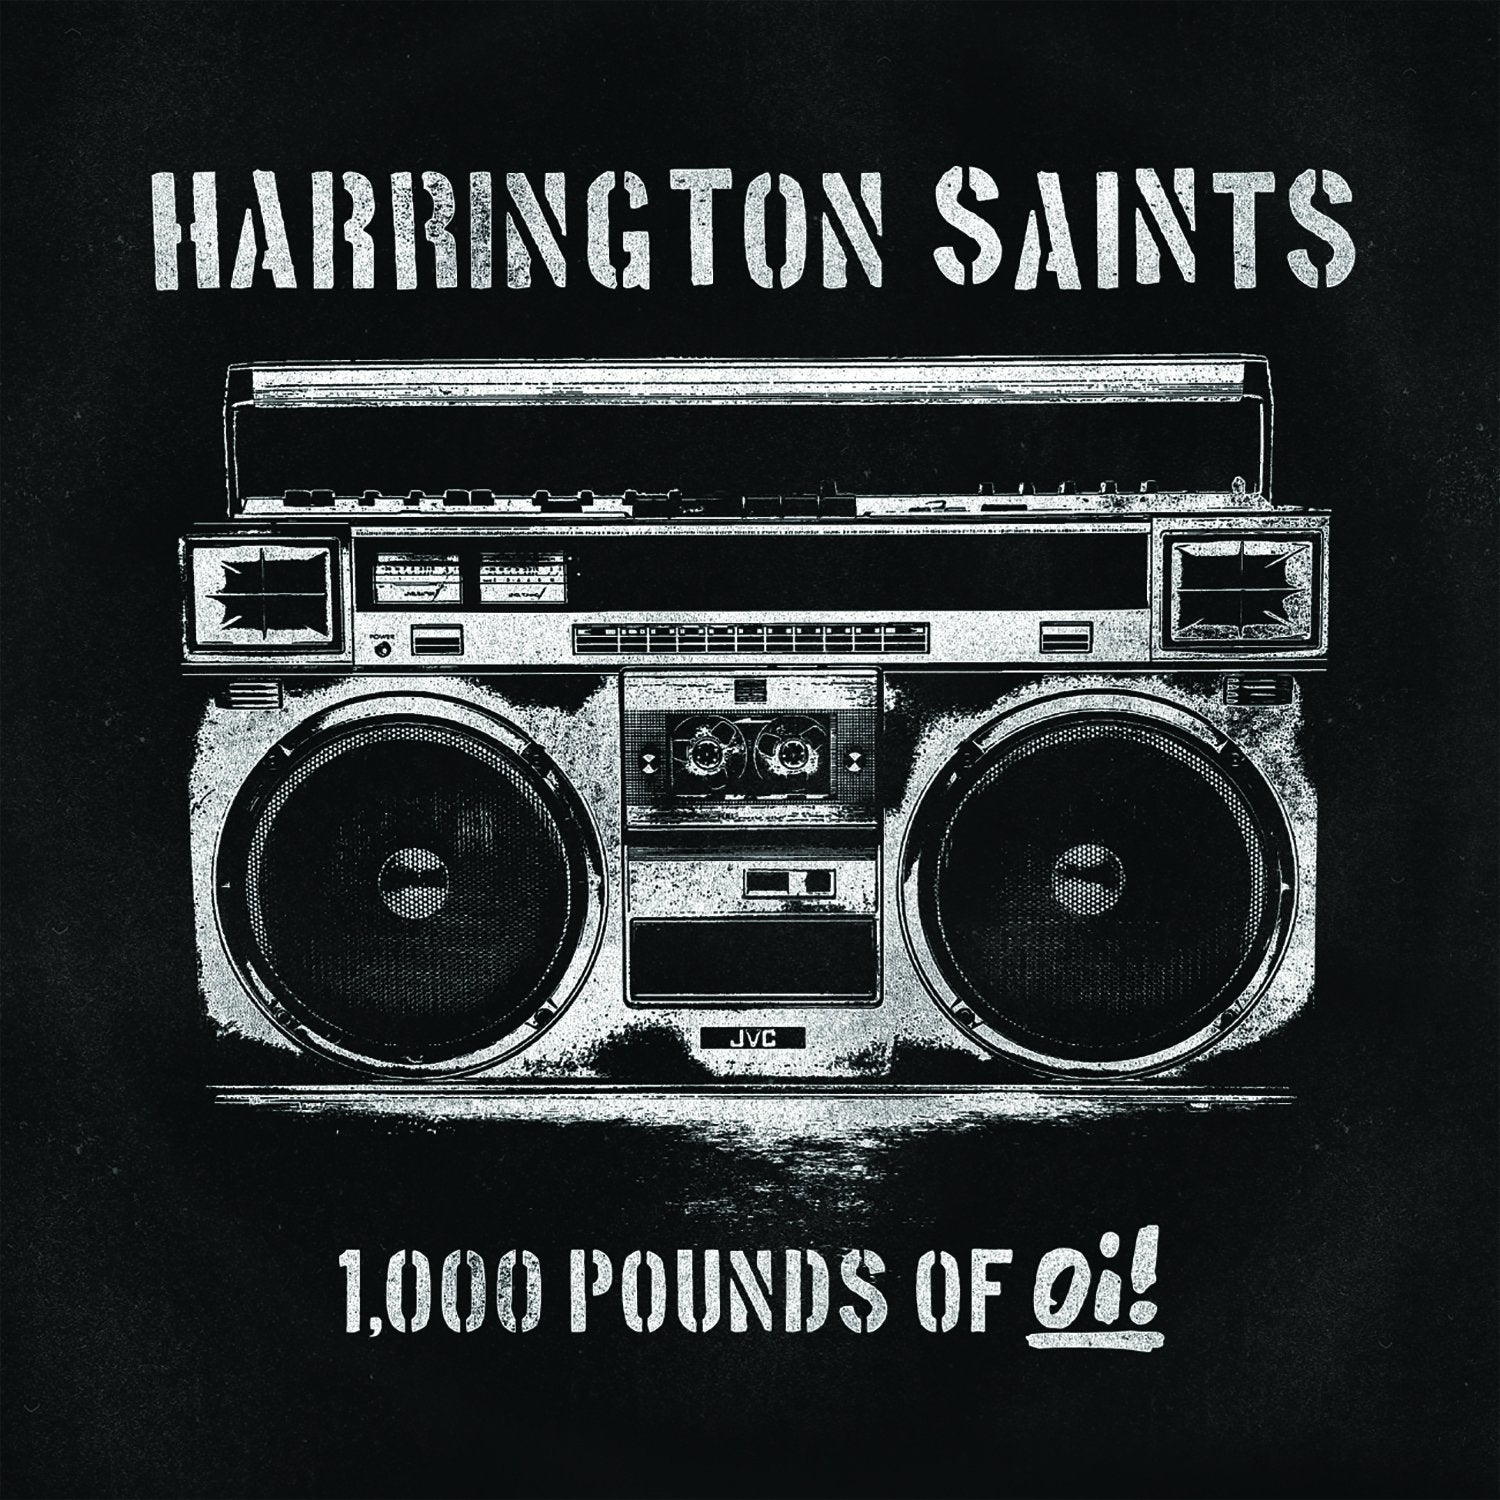 Harrington Saints - 1,000 Pounds of Oi! [RED VINYL] - New LP